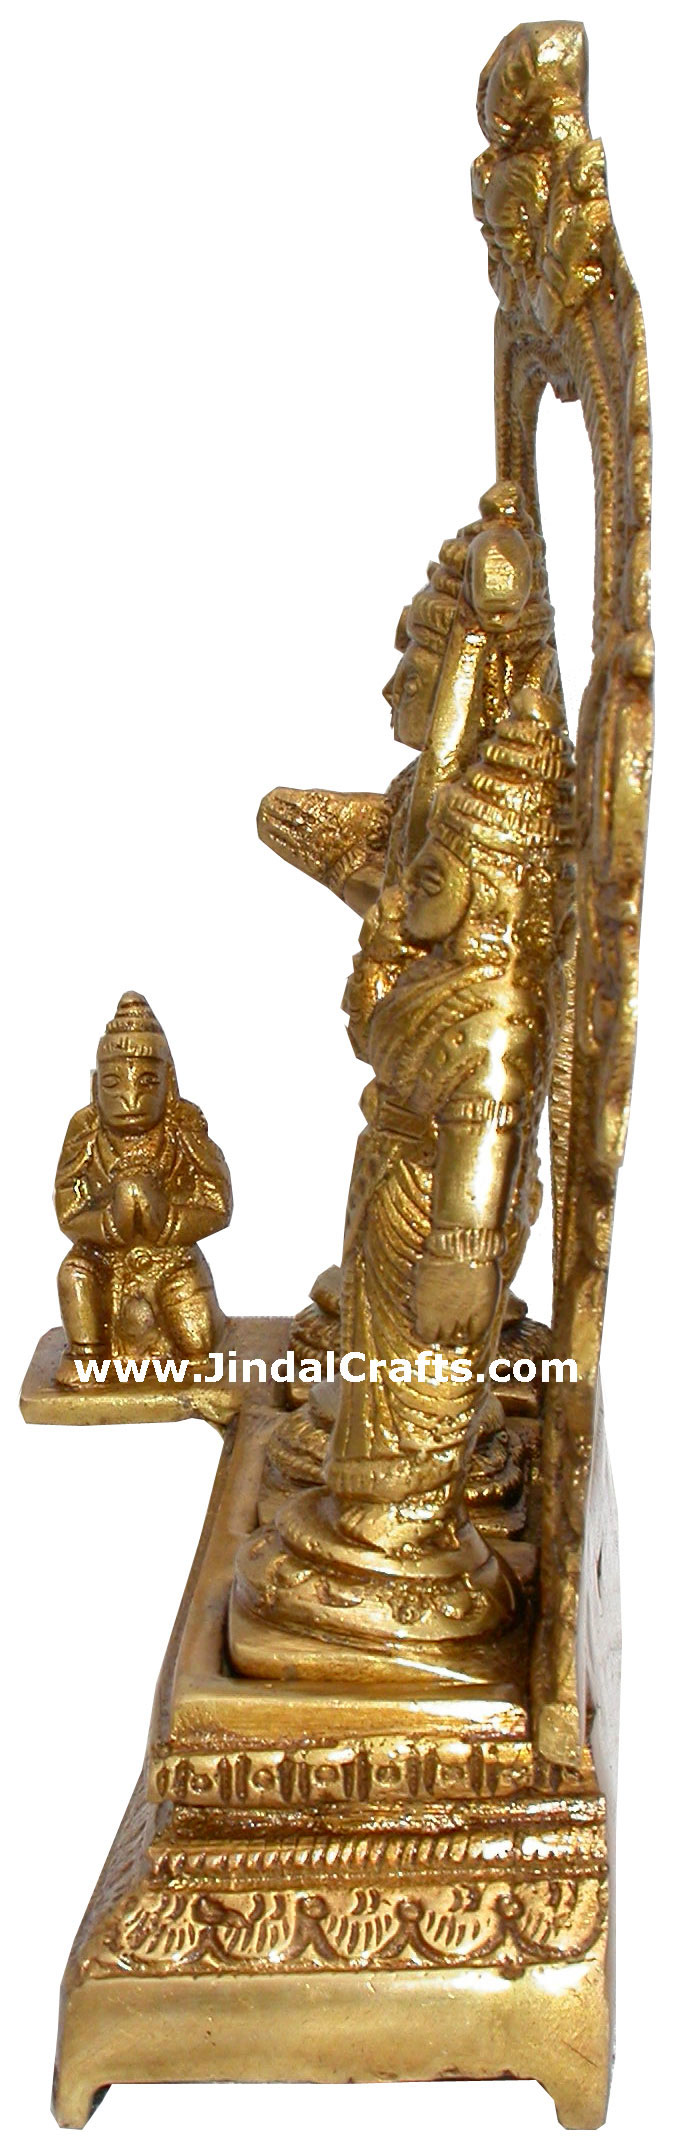 Ram Darbar Ram Seeta Luxman Hindu Idol Statues Crafts